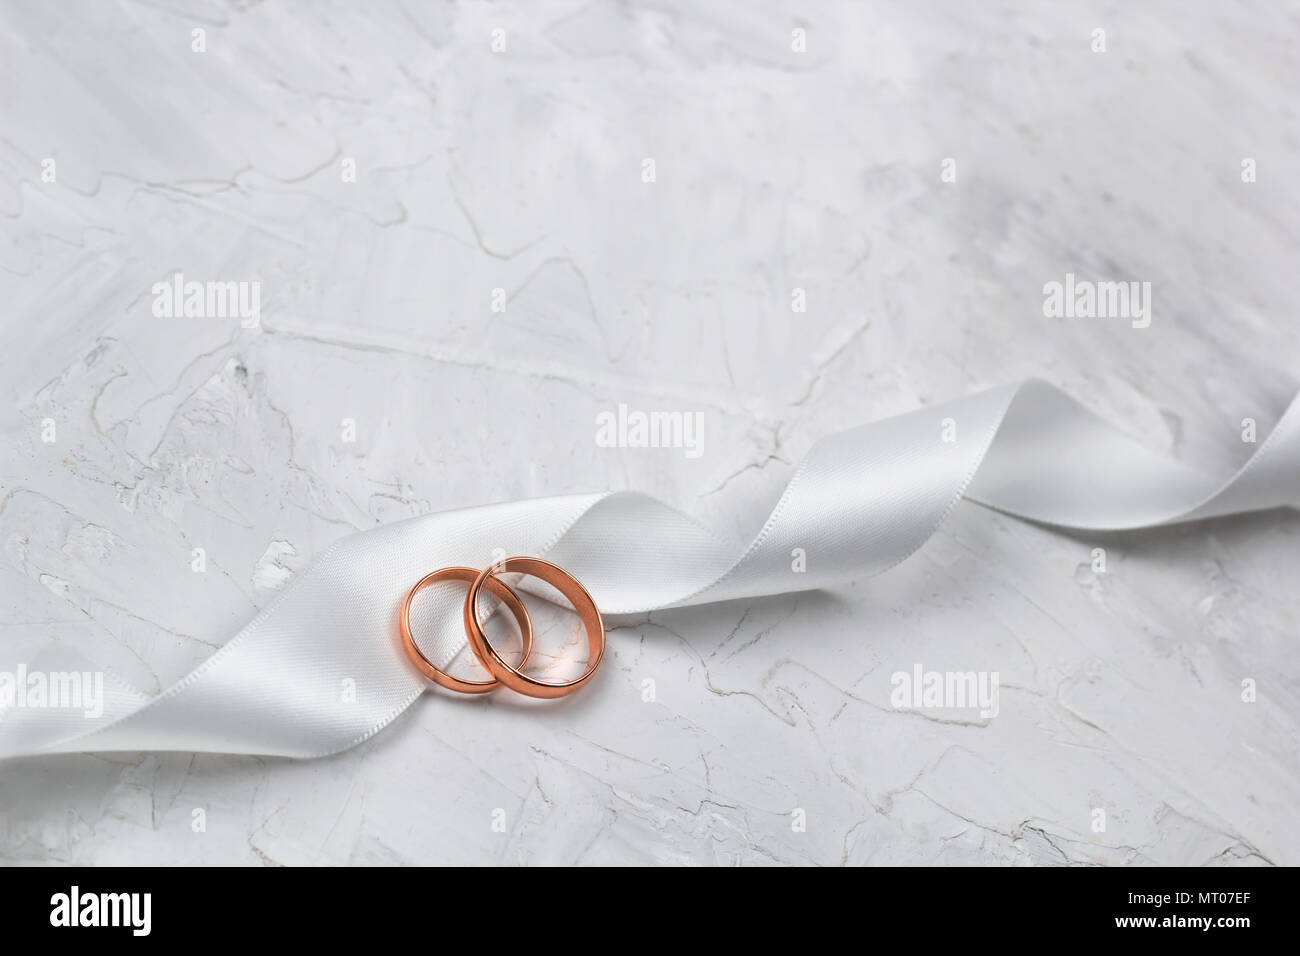 Zwei goldene Ringe und Weiß Satin Band Hochzeit Dekor oder Hochzeit  Einladung Hintergrund Konzept Stockfotografie - Alamy